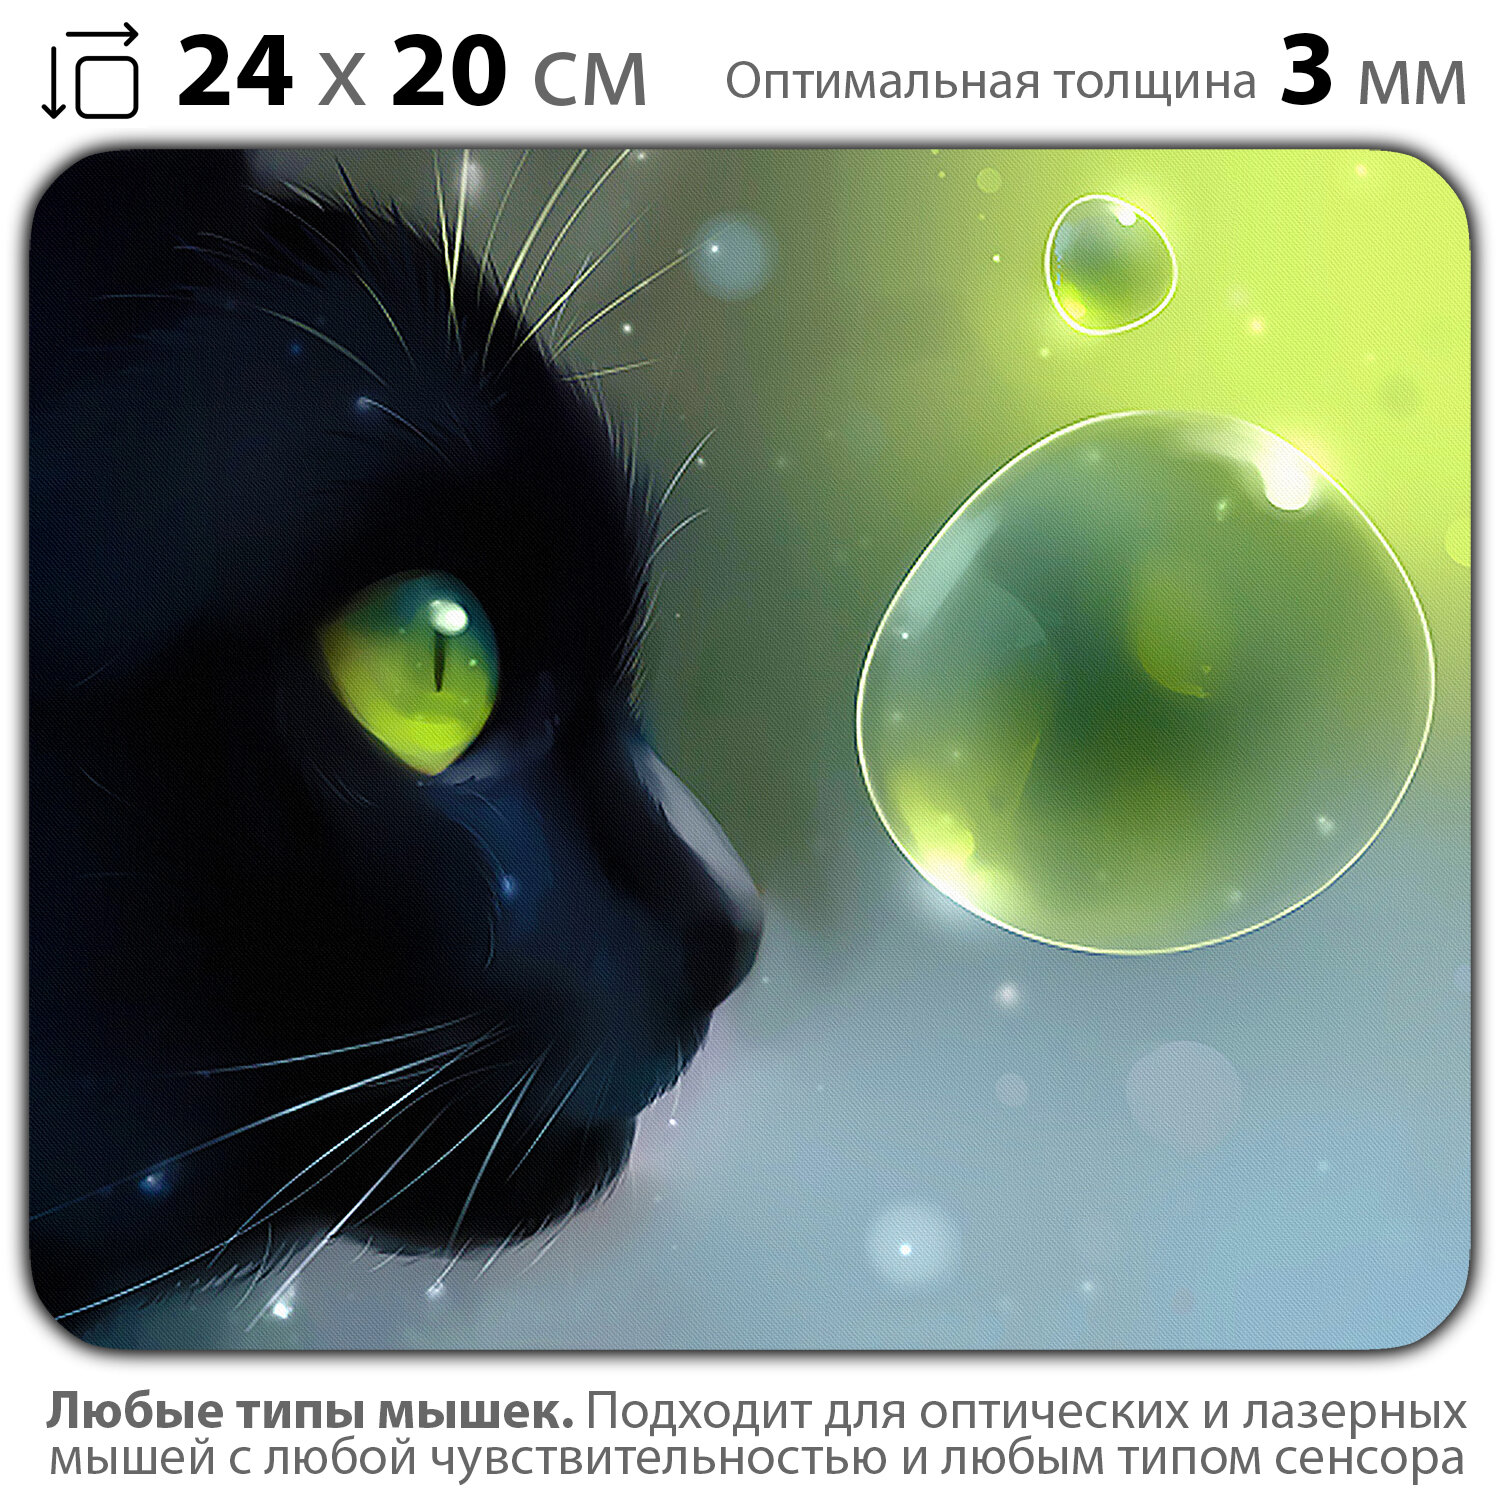 Коврик для мыши "Черный кот и пузырик" (24 x 20 см x 3 мм)